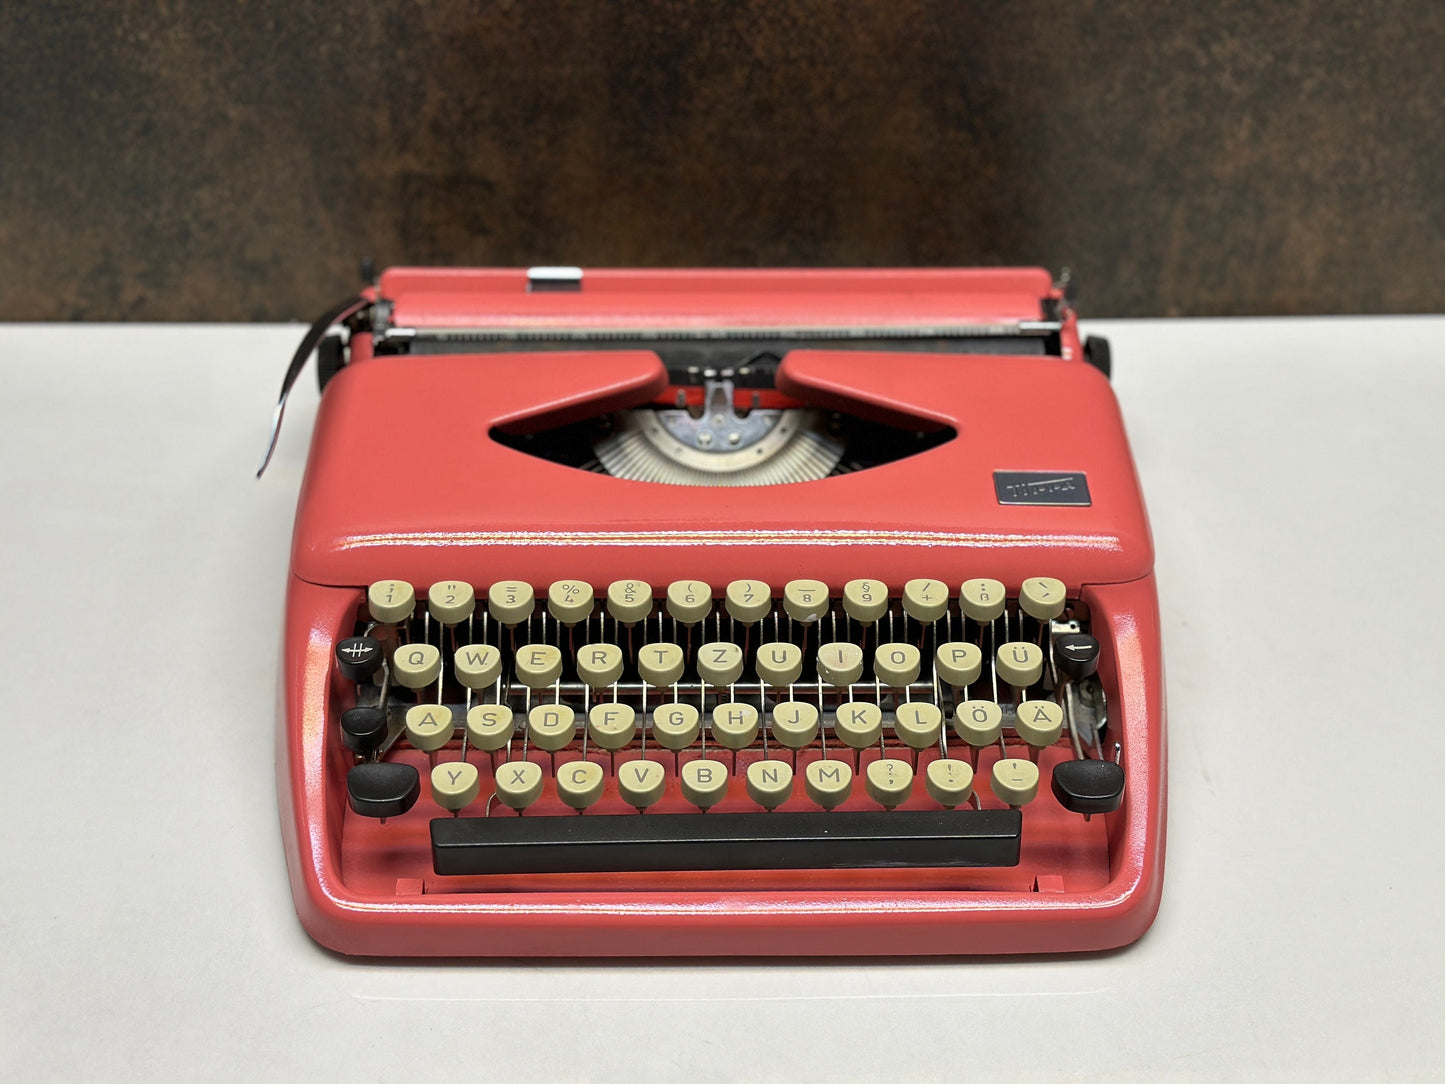 Adler Tippa Typewriter - 1960 - Vintage Mechanical Keyboard - Pink Typewriter,typewriter working